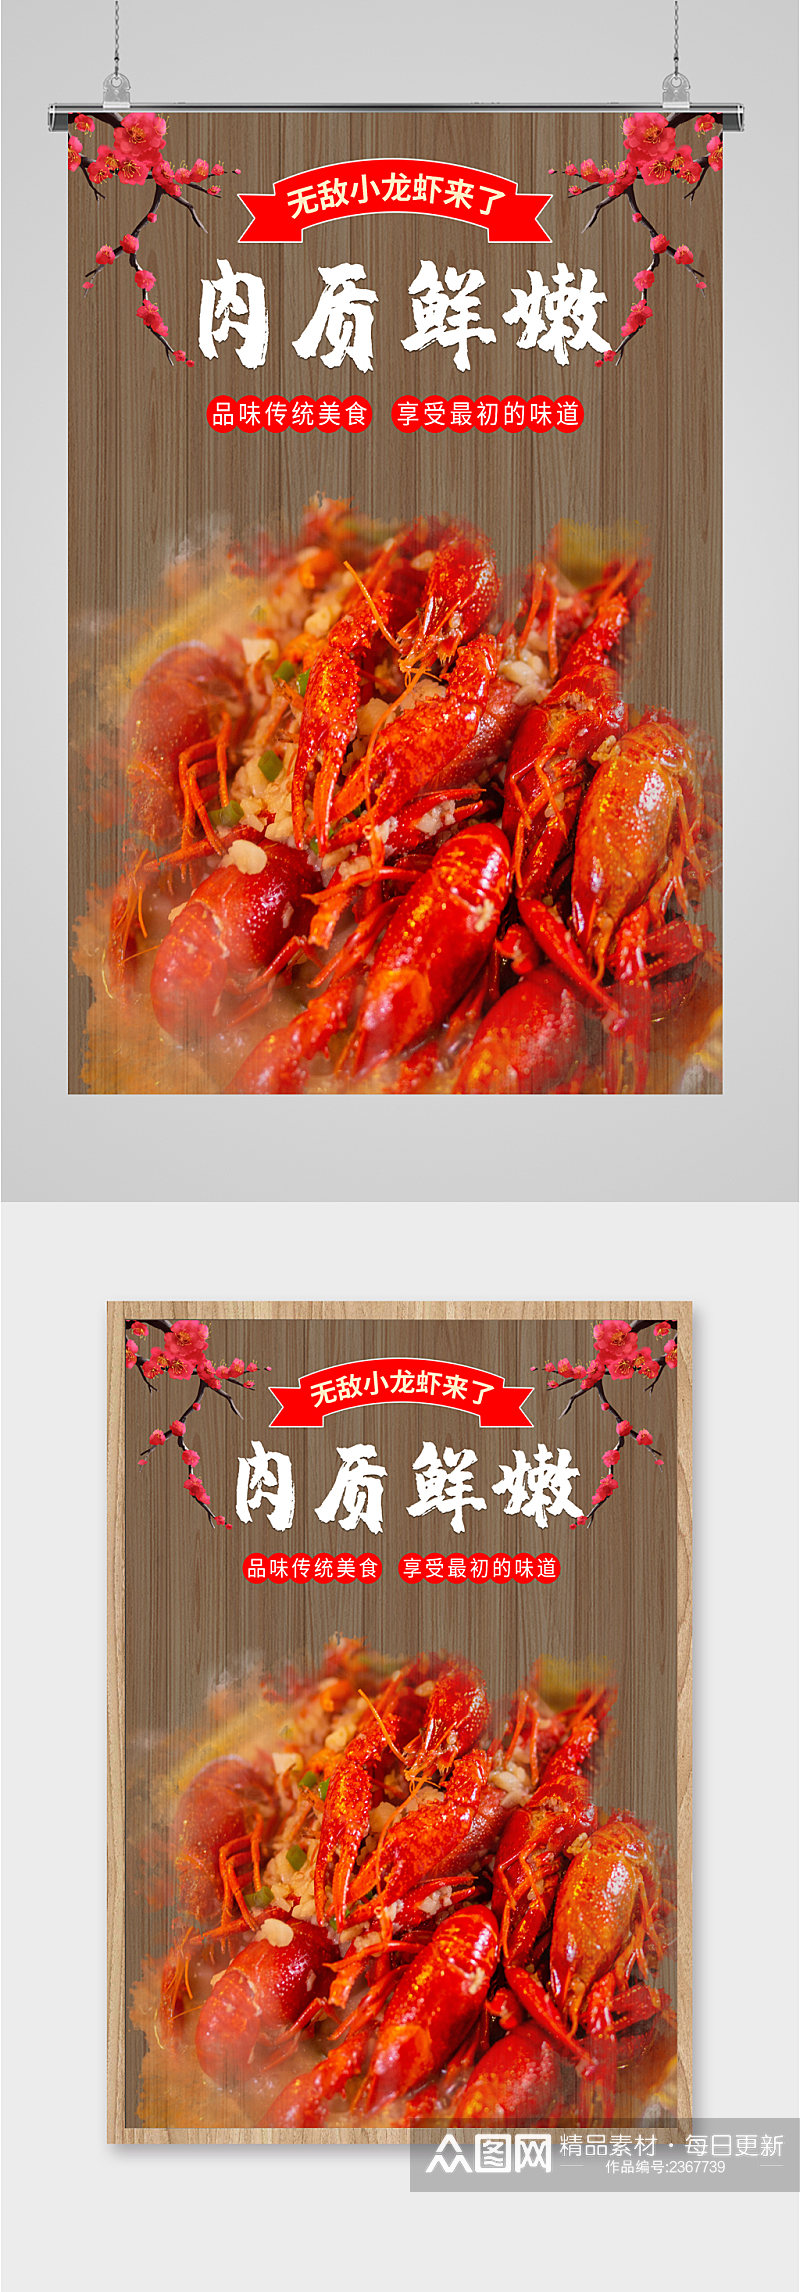 小龙虾海鲜美食海报素材